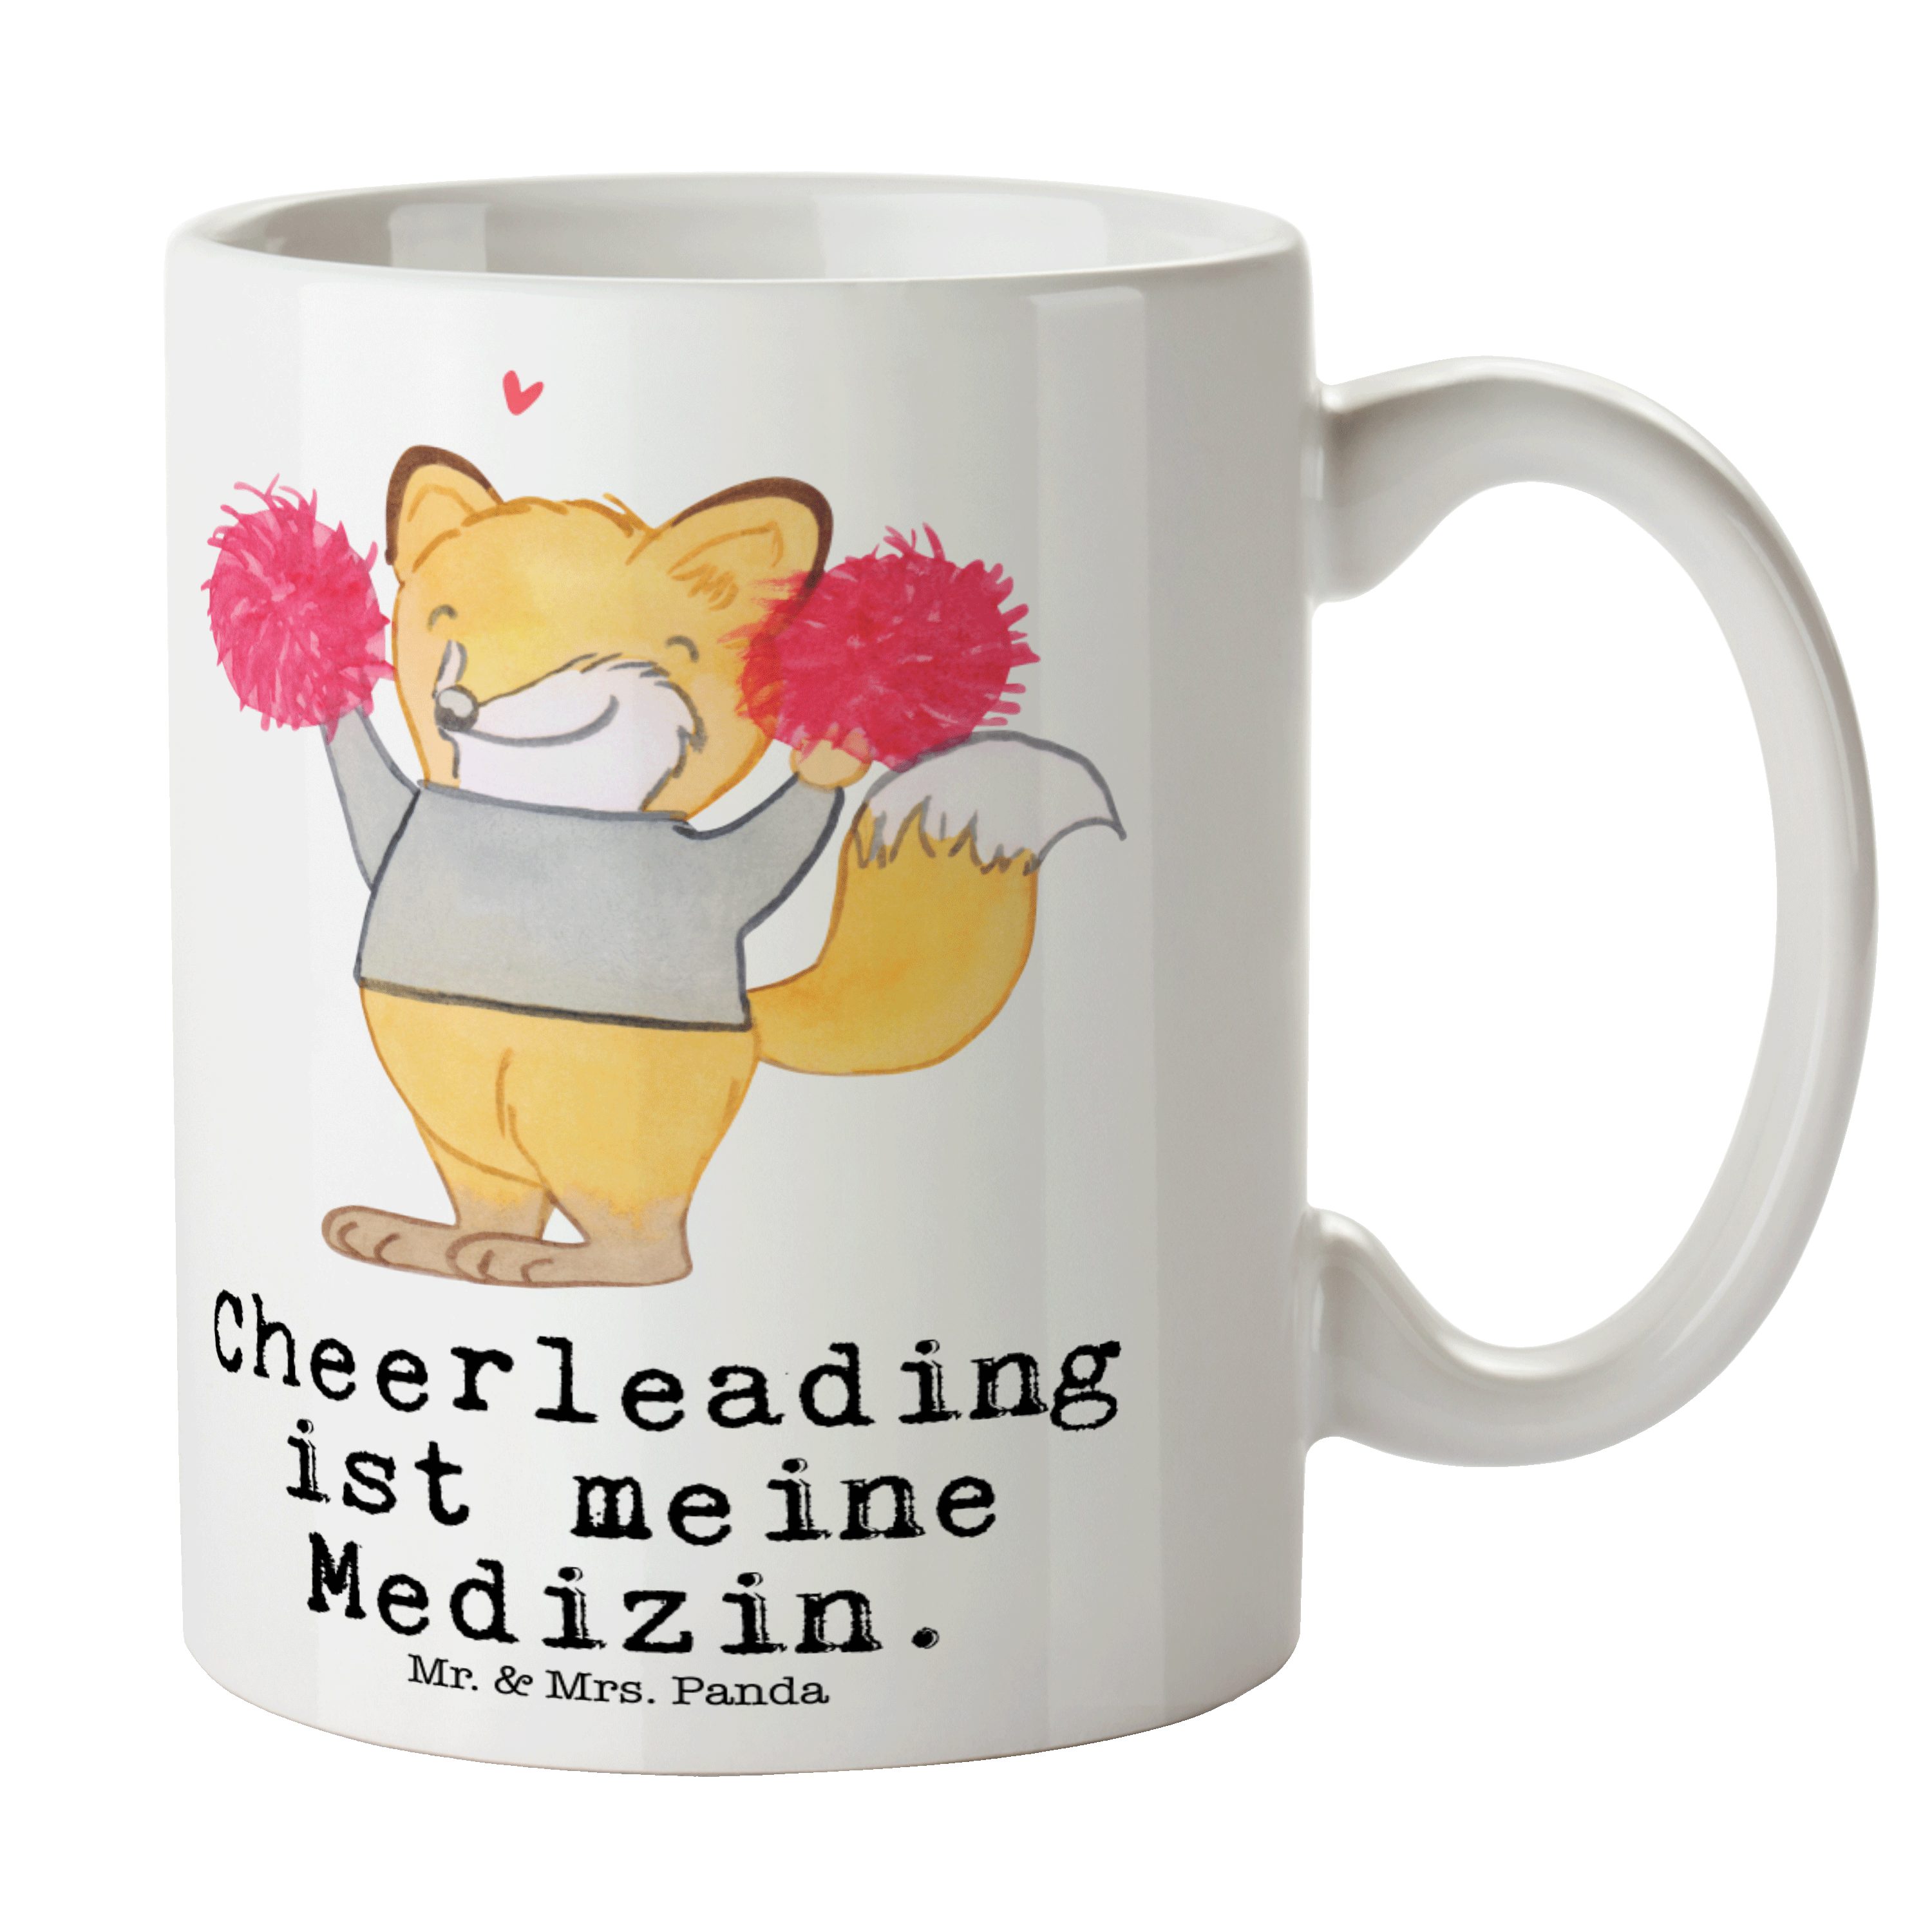 Mr. & Mrs. Panda Tasse Fuchs Cheerleader Medizin - Weiß - Geschenk, Kaffeetasse, Auszeichnun, Keramik